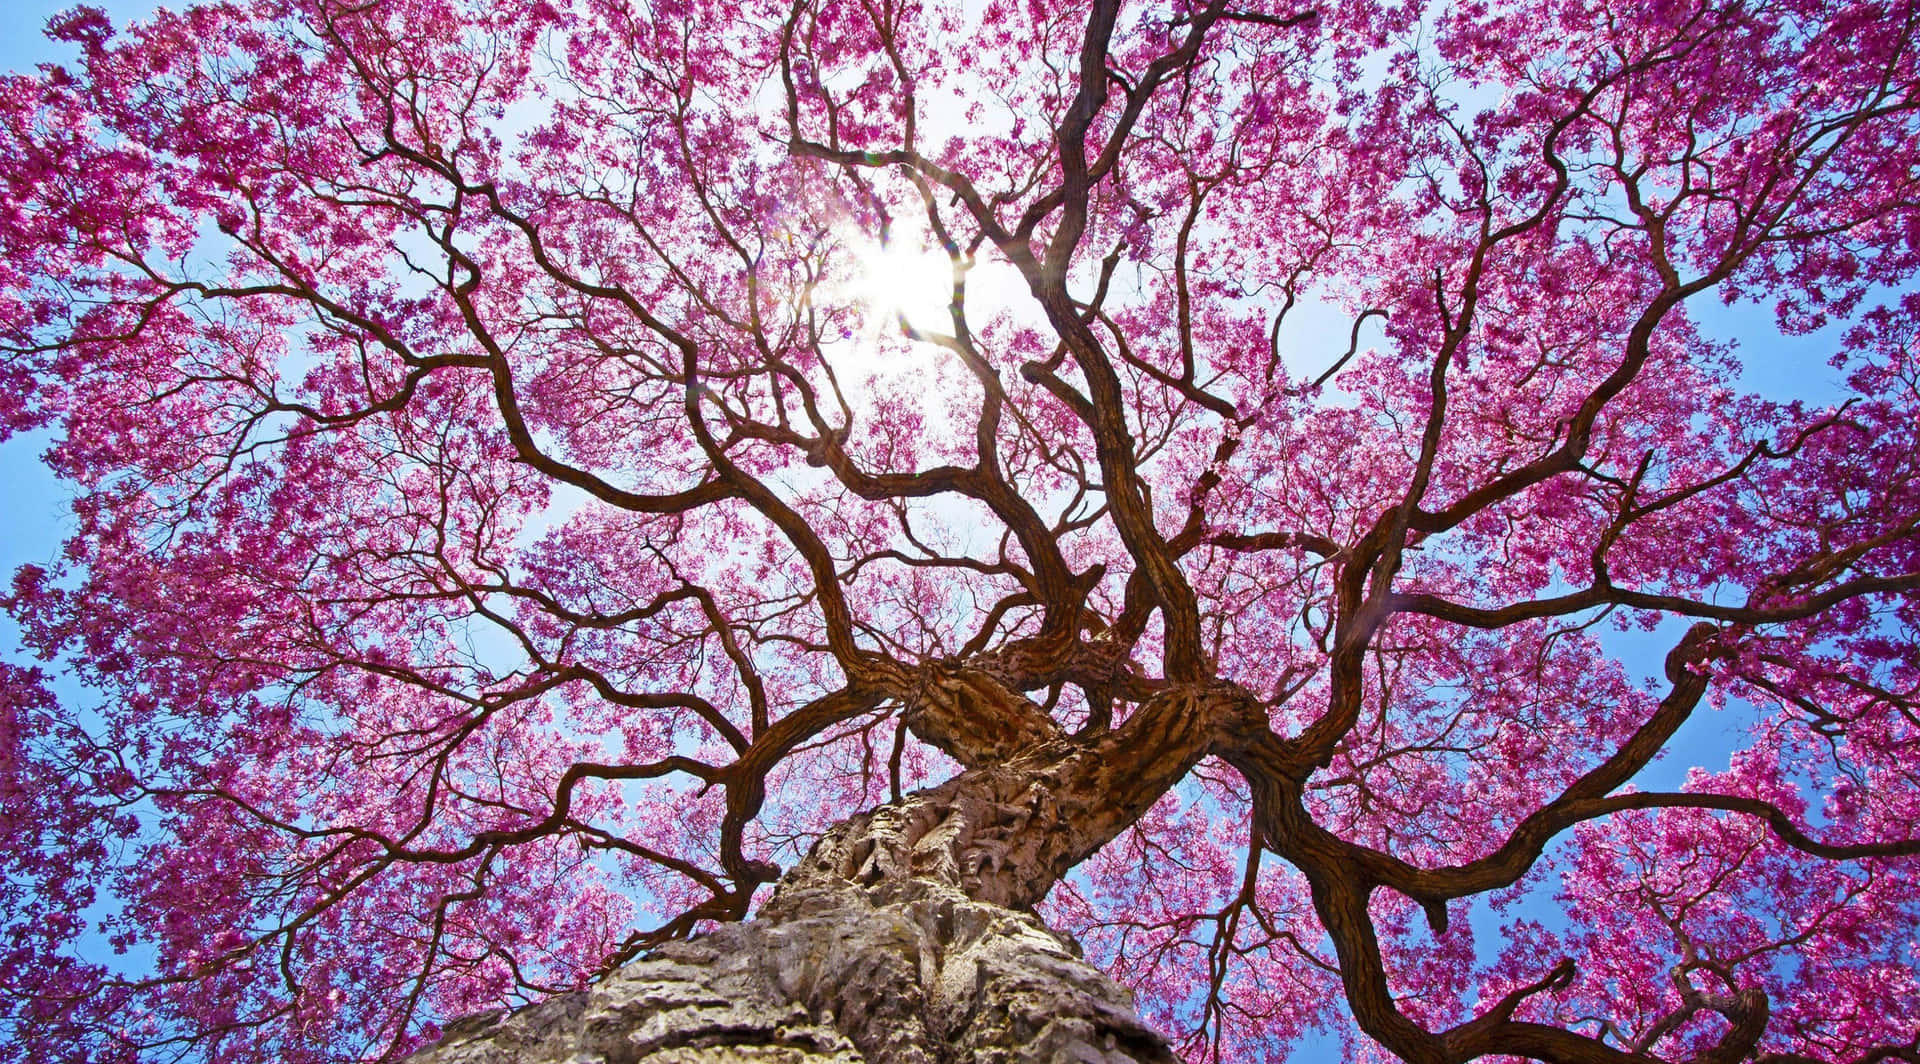 En gardin af smukke pink blomster hænger ned fra træerne. Wallpaper